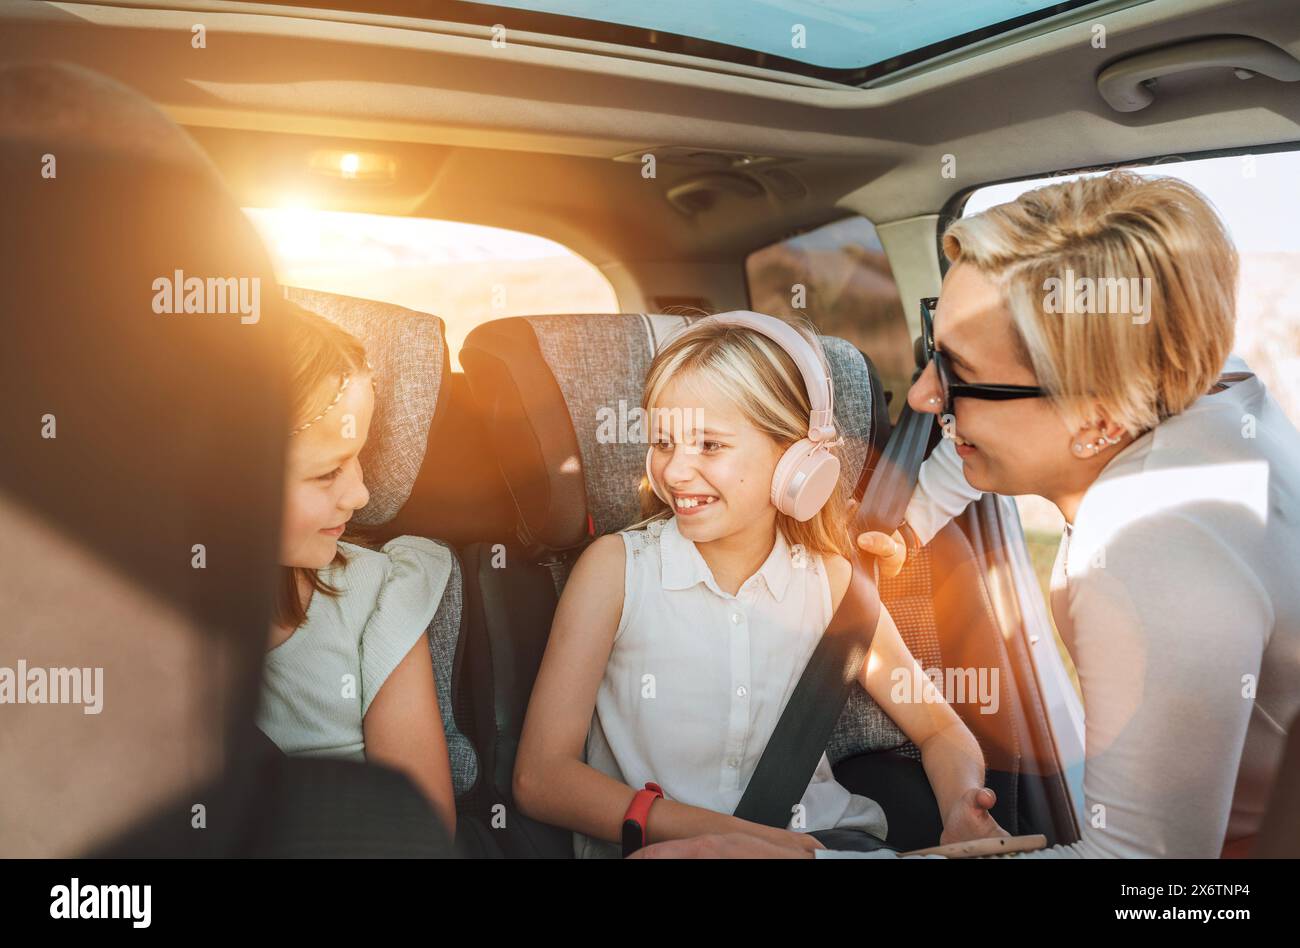 All'interno dell'auto foto di una madre che si stringe con la cintura di sicurezza della bambina seduta sul seggiolino per bambini. Ragazza che ascolta musica con le cuffie Foto Stock